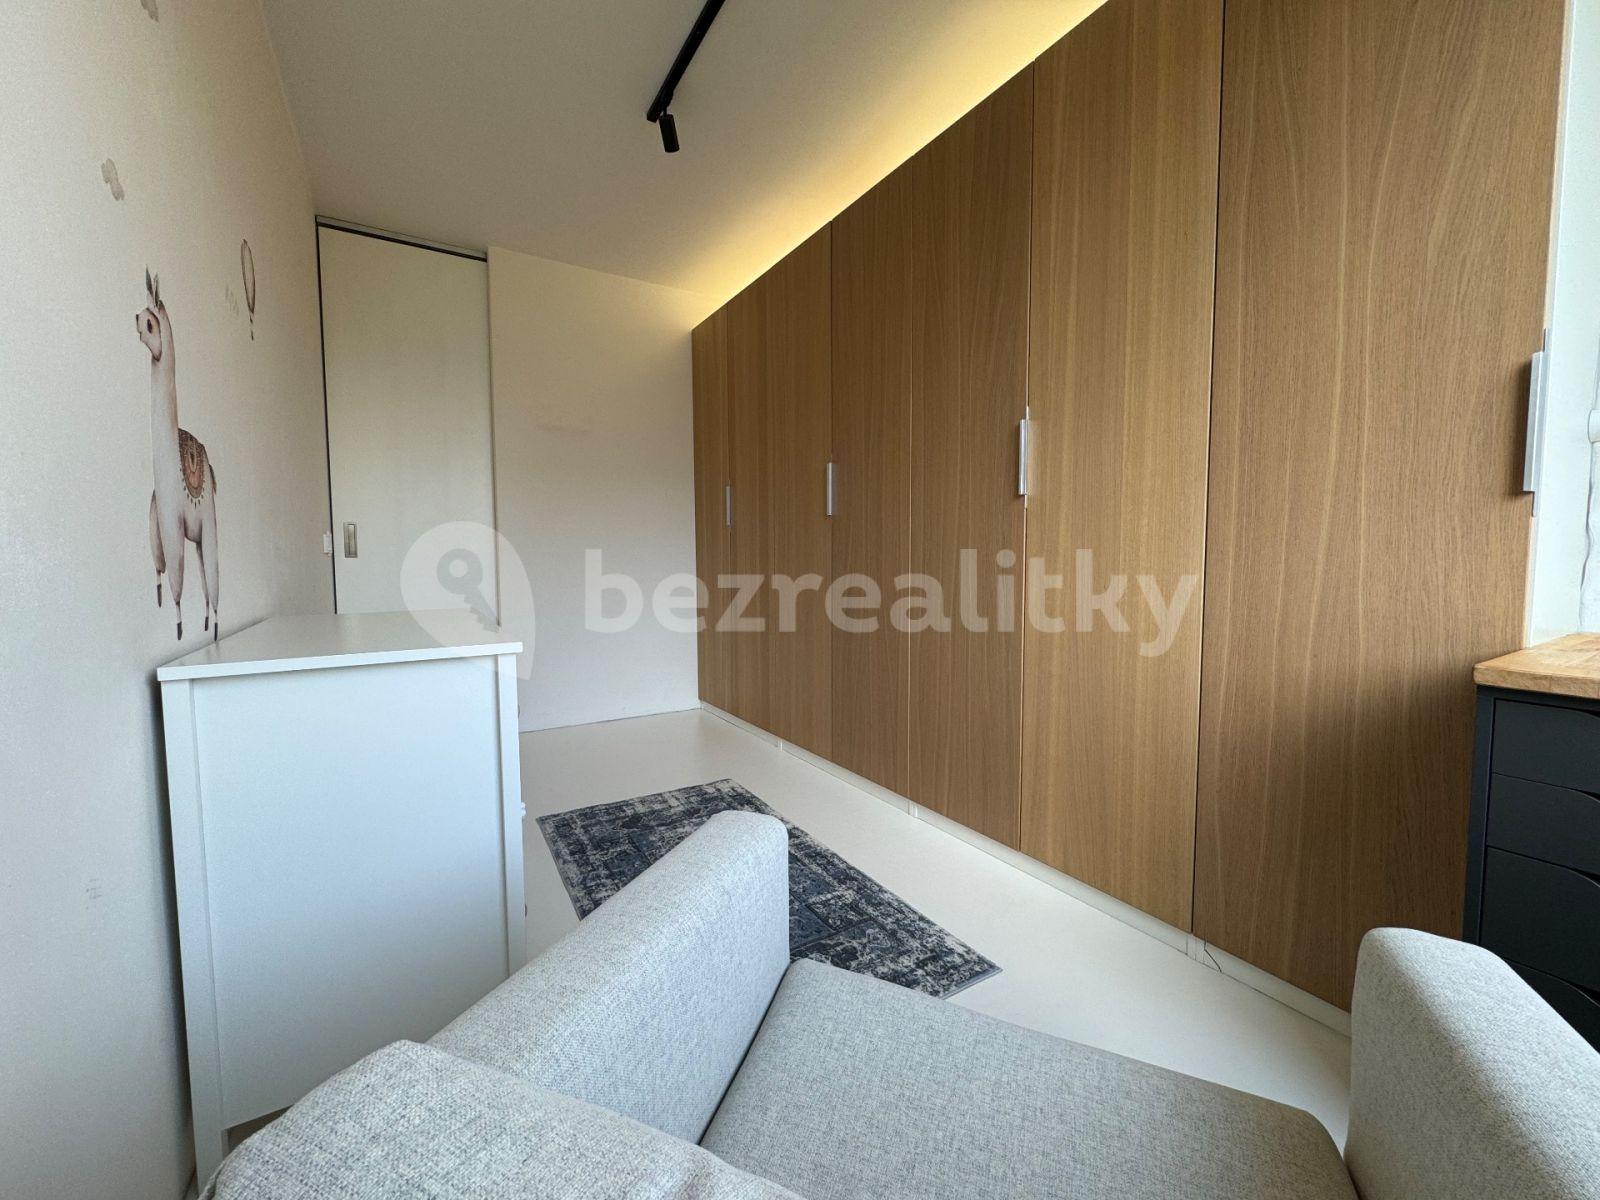 3 bedroom flat for sale, 66 m², Brodského, Prague, Prague